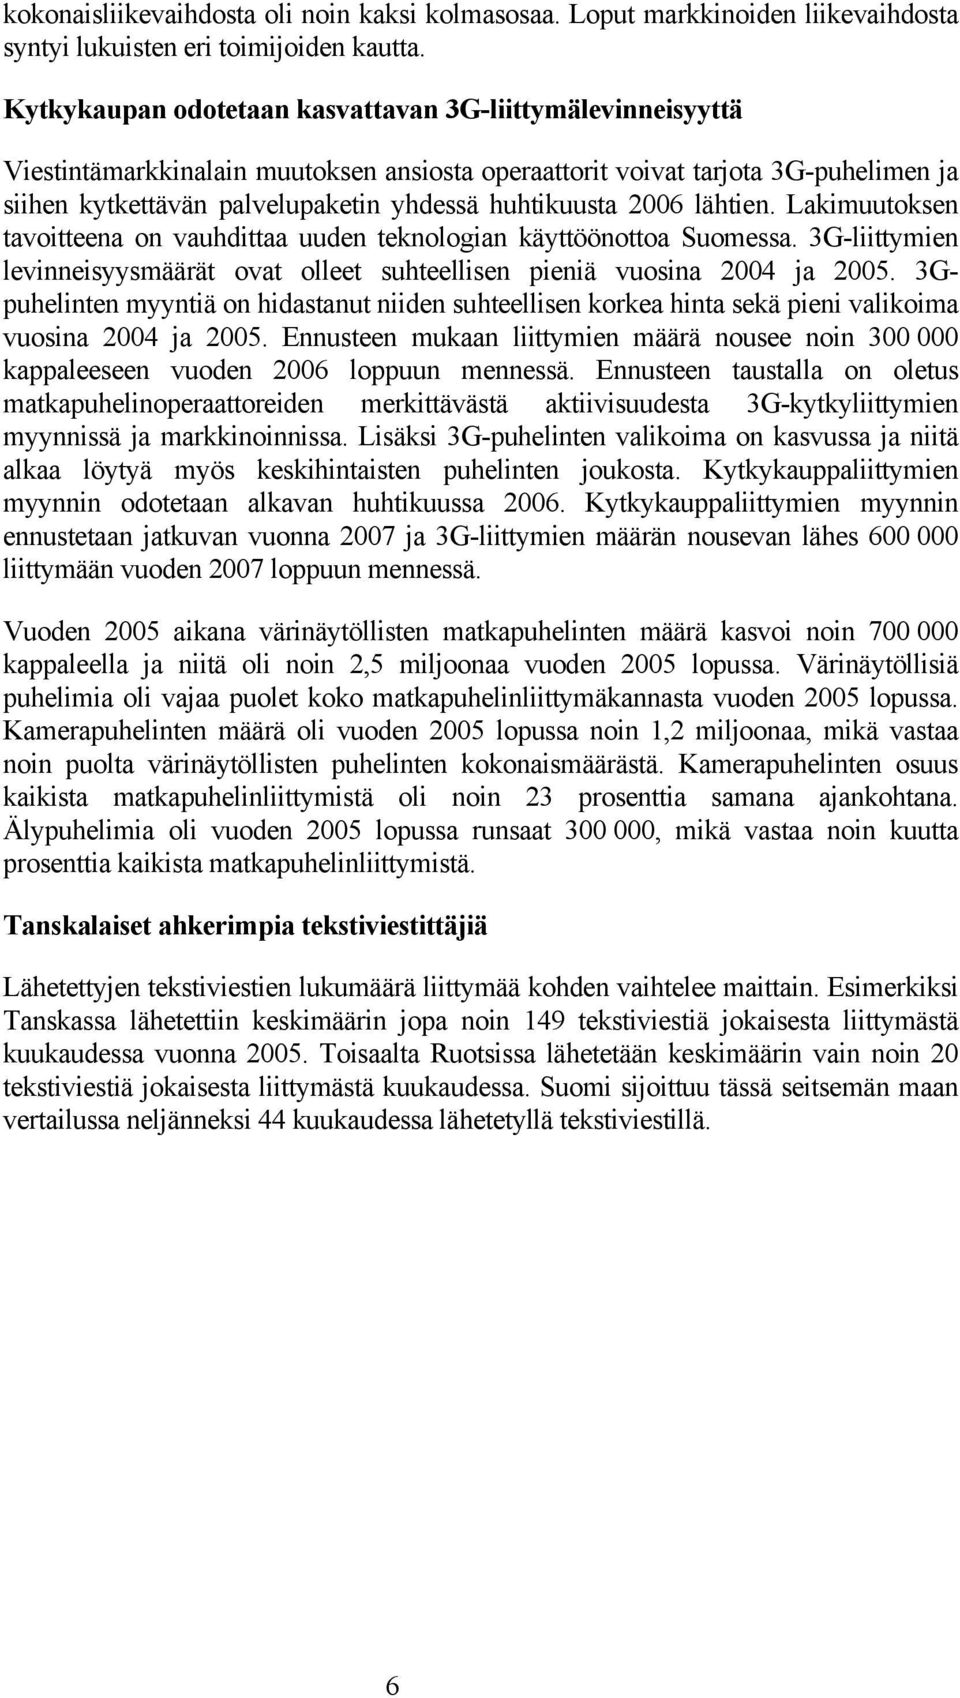 2006 lähtien. Lakimuutoksen tavoitteena on vauhdittaa uuden teknologian käyttöönottoa Suomessa. 3G-liittymien levinneisyysmäärät ovat olleet suhteellisen pieniä vuosina 2004 ja 2005.